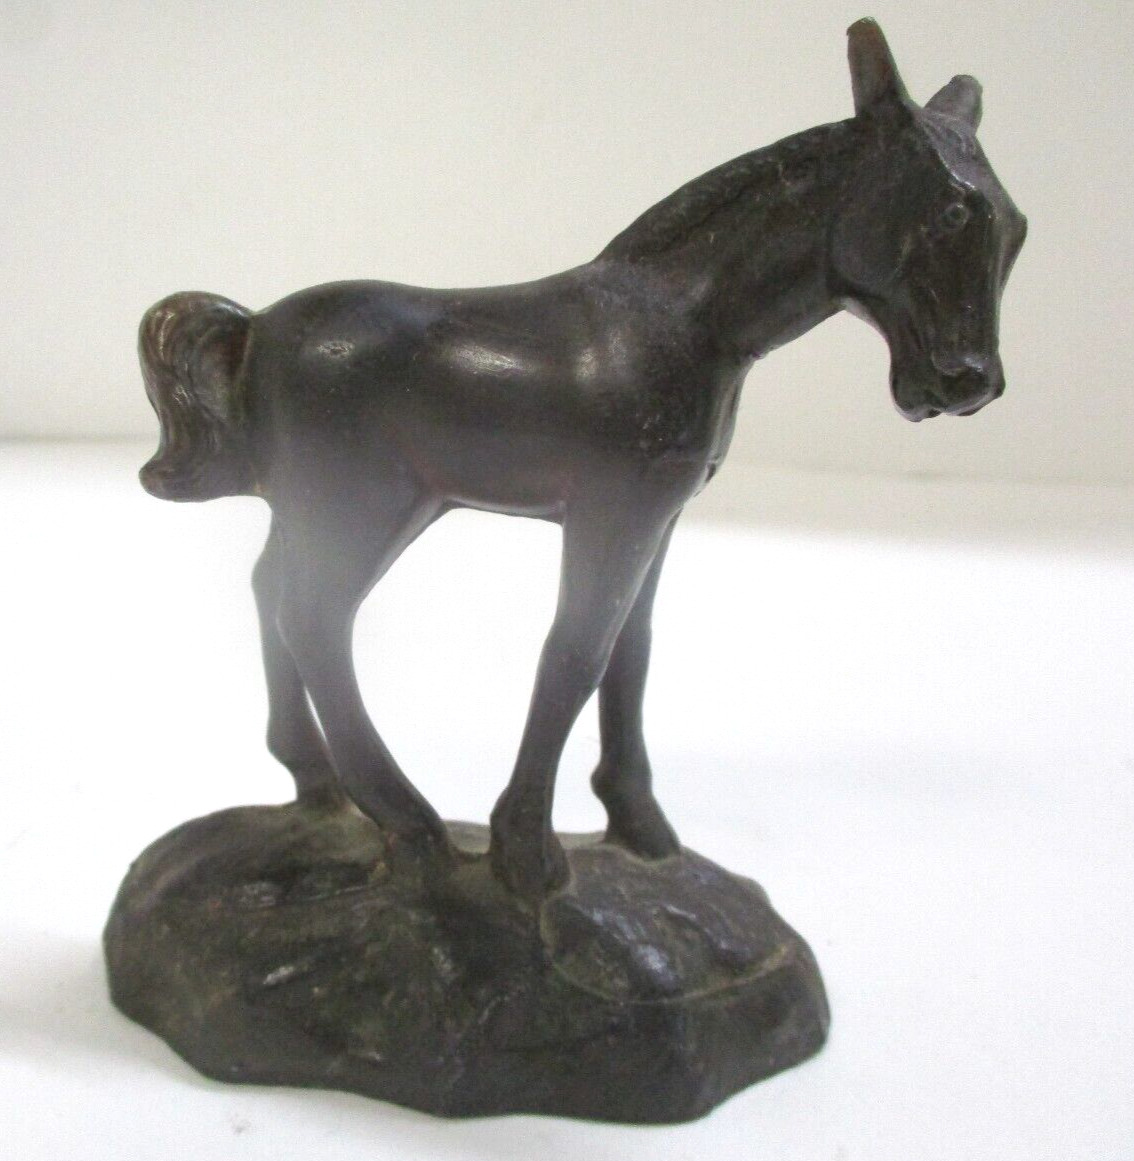 Small Vintage Metal Horse Figurine Statue